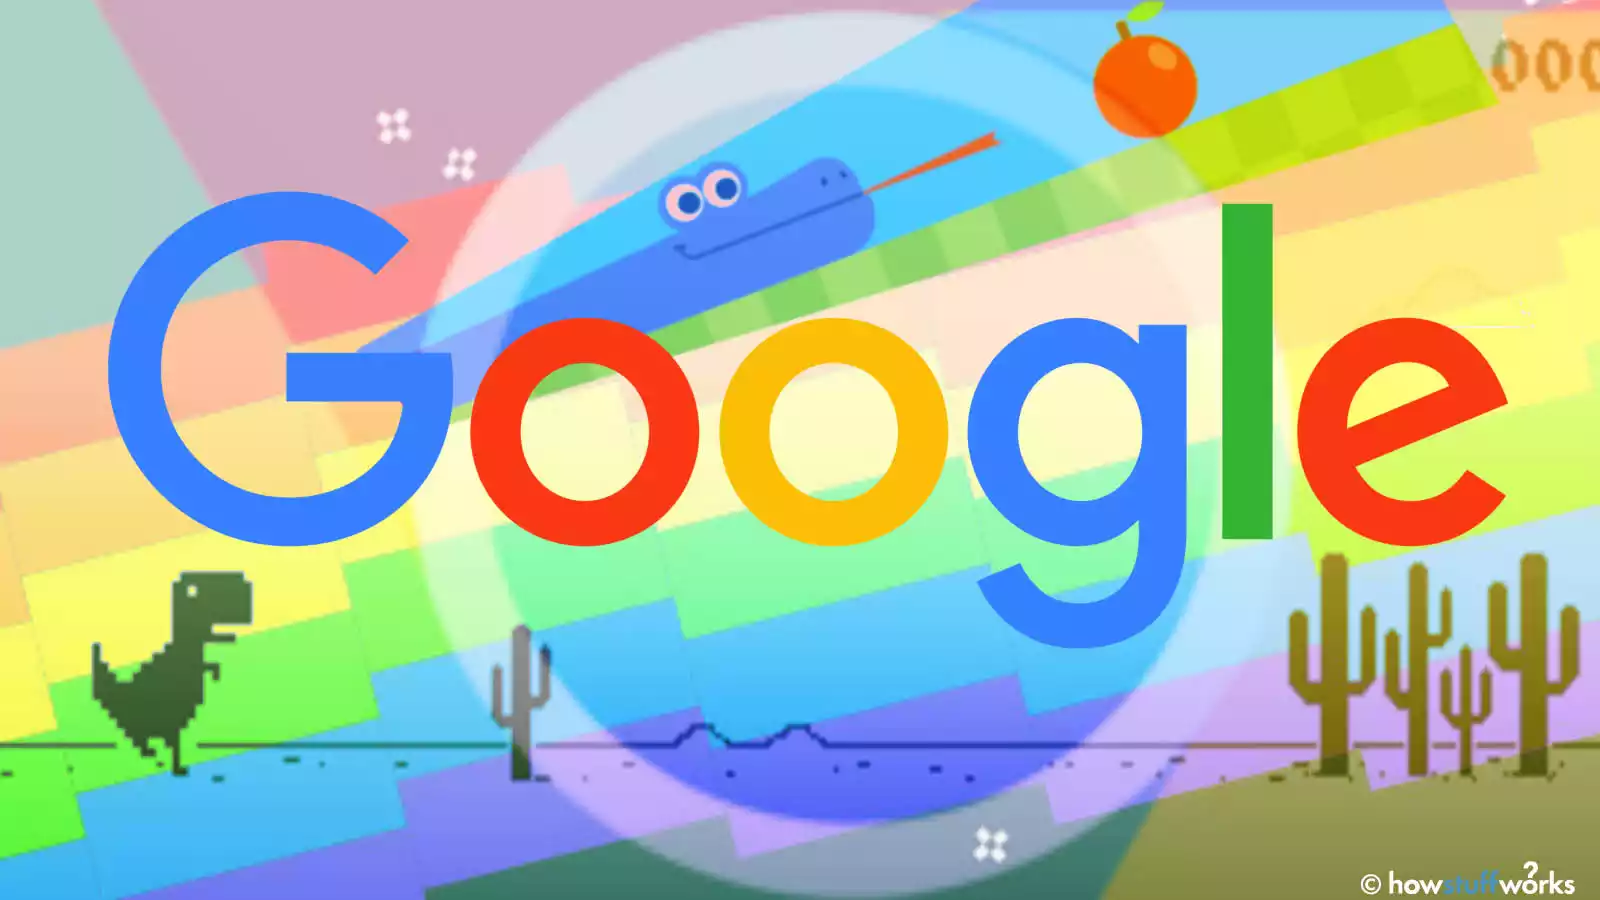 Google Easter eggs & Google games